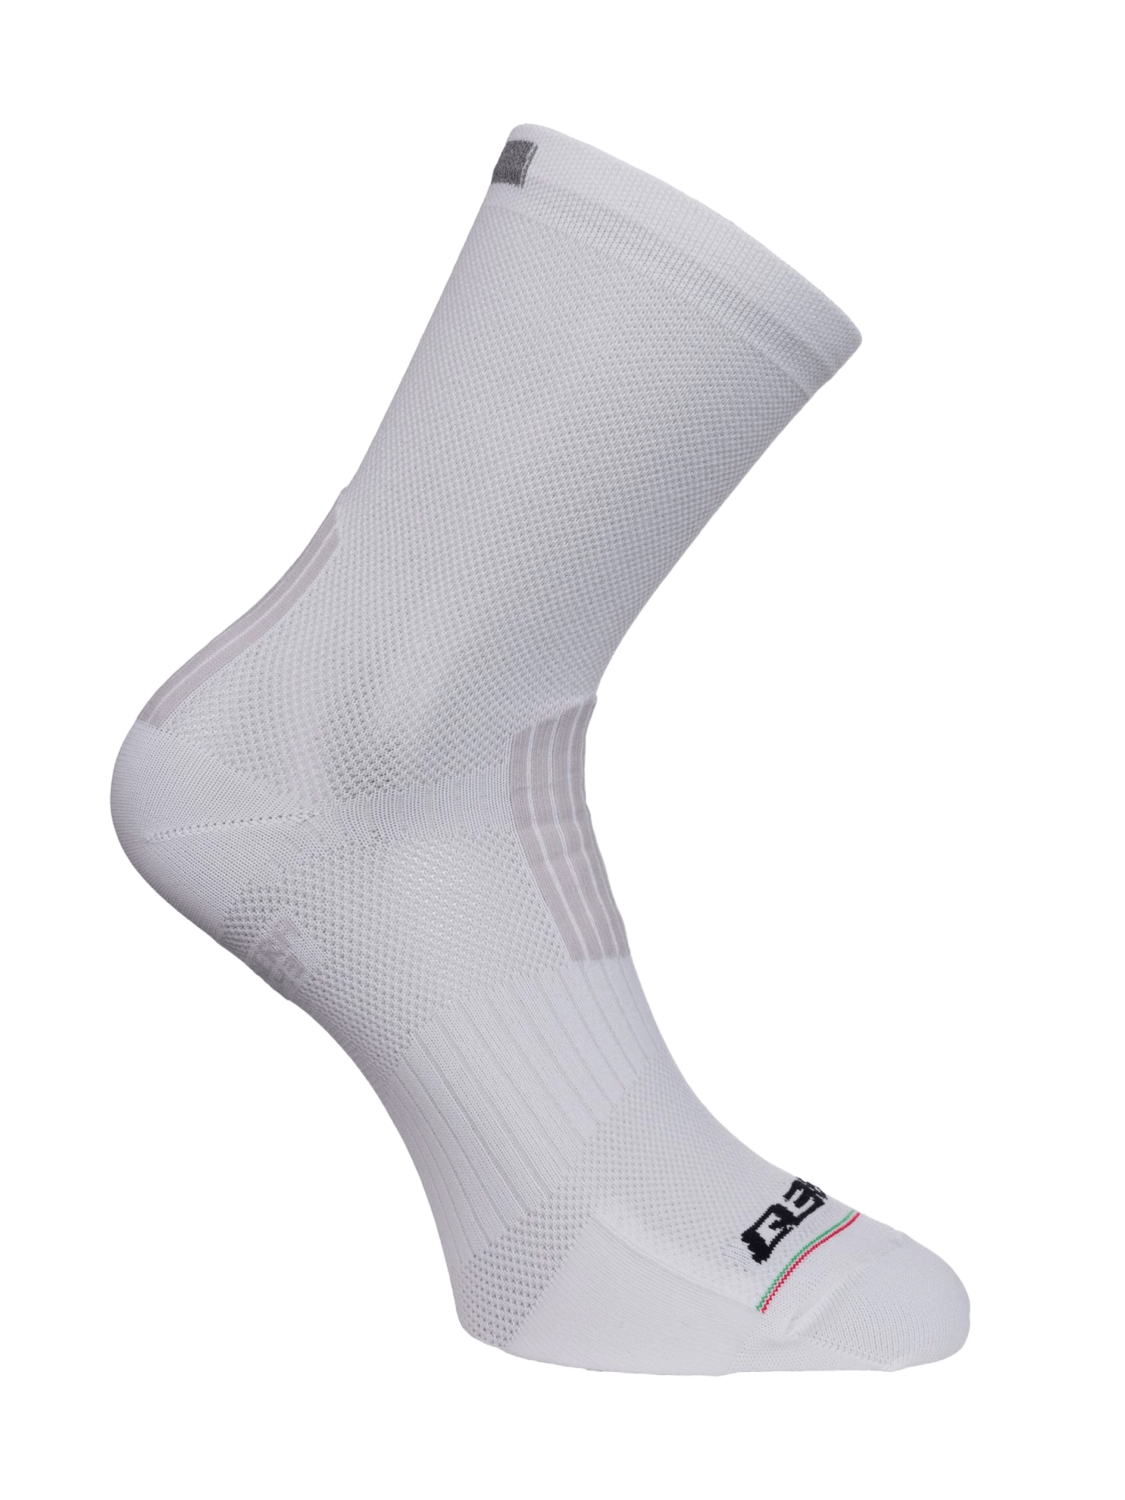 Q36.5 Super Leggera Socks